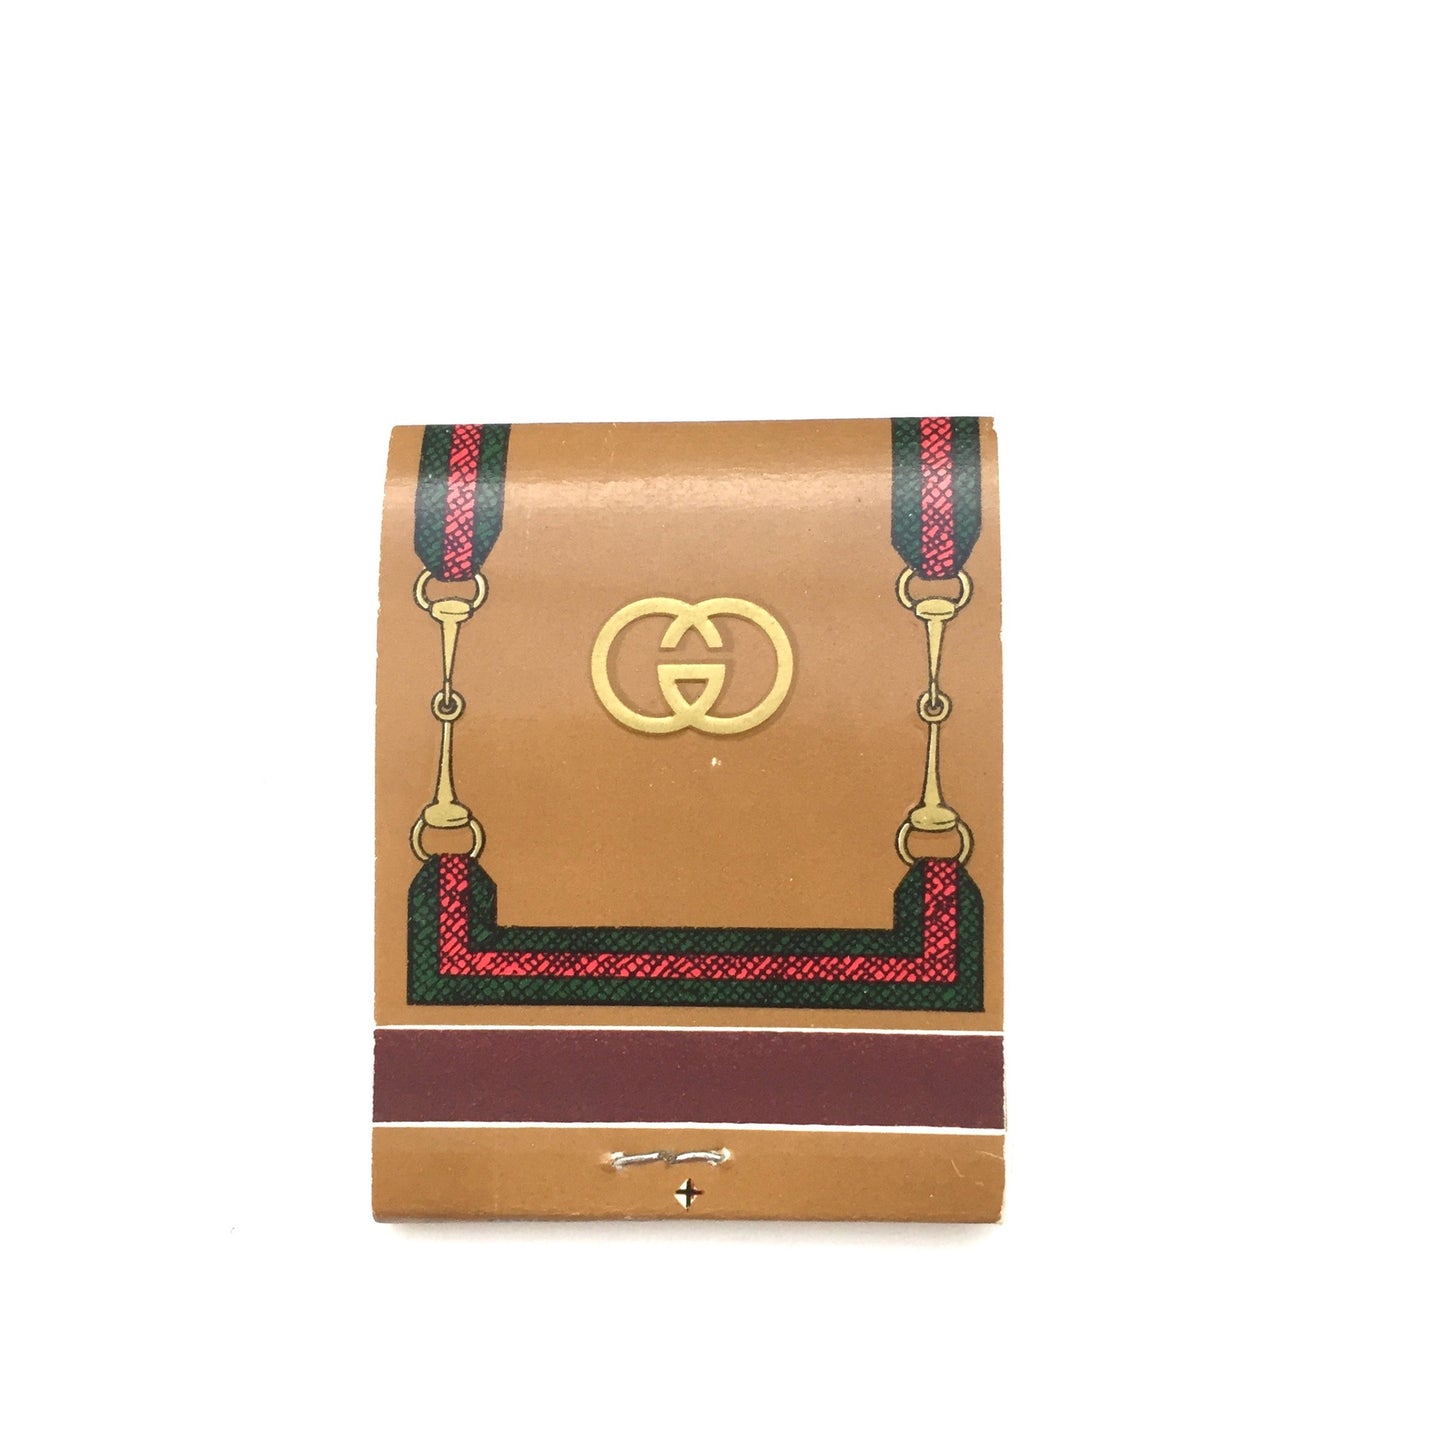 Gucci - Vintage Matchbooks, Case of 25